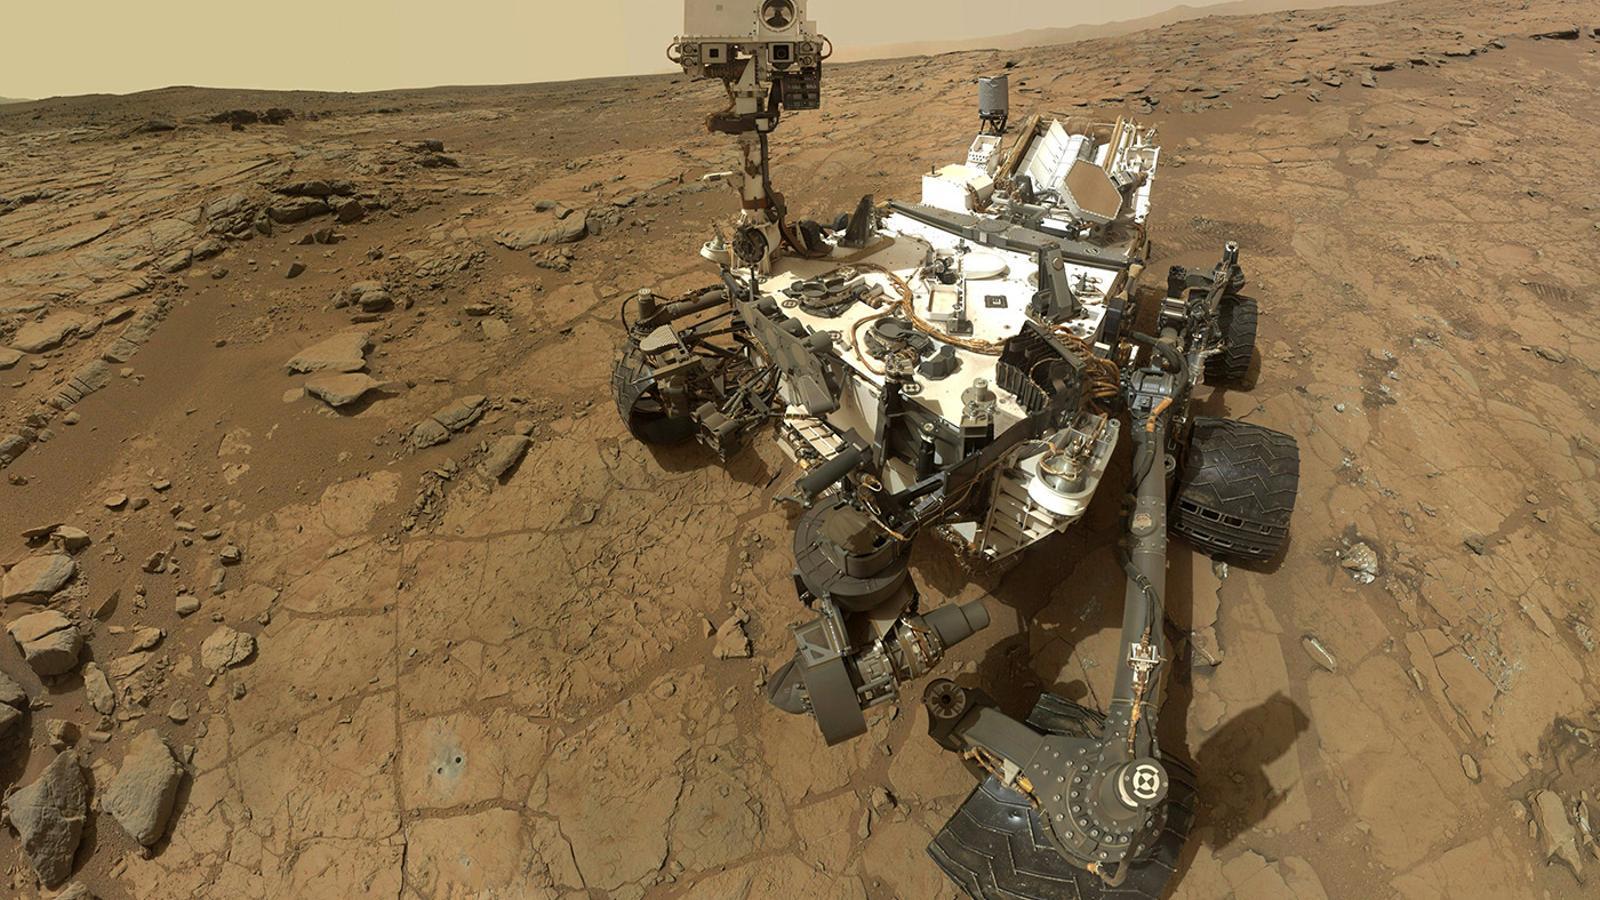 Mart serà un dels noms destacats de l'exploració espacial d'aquesta dècada. / Mars rover celebrates / HANDOUT